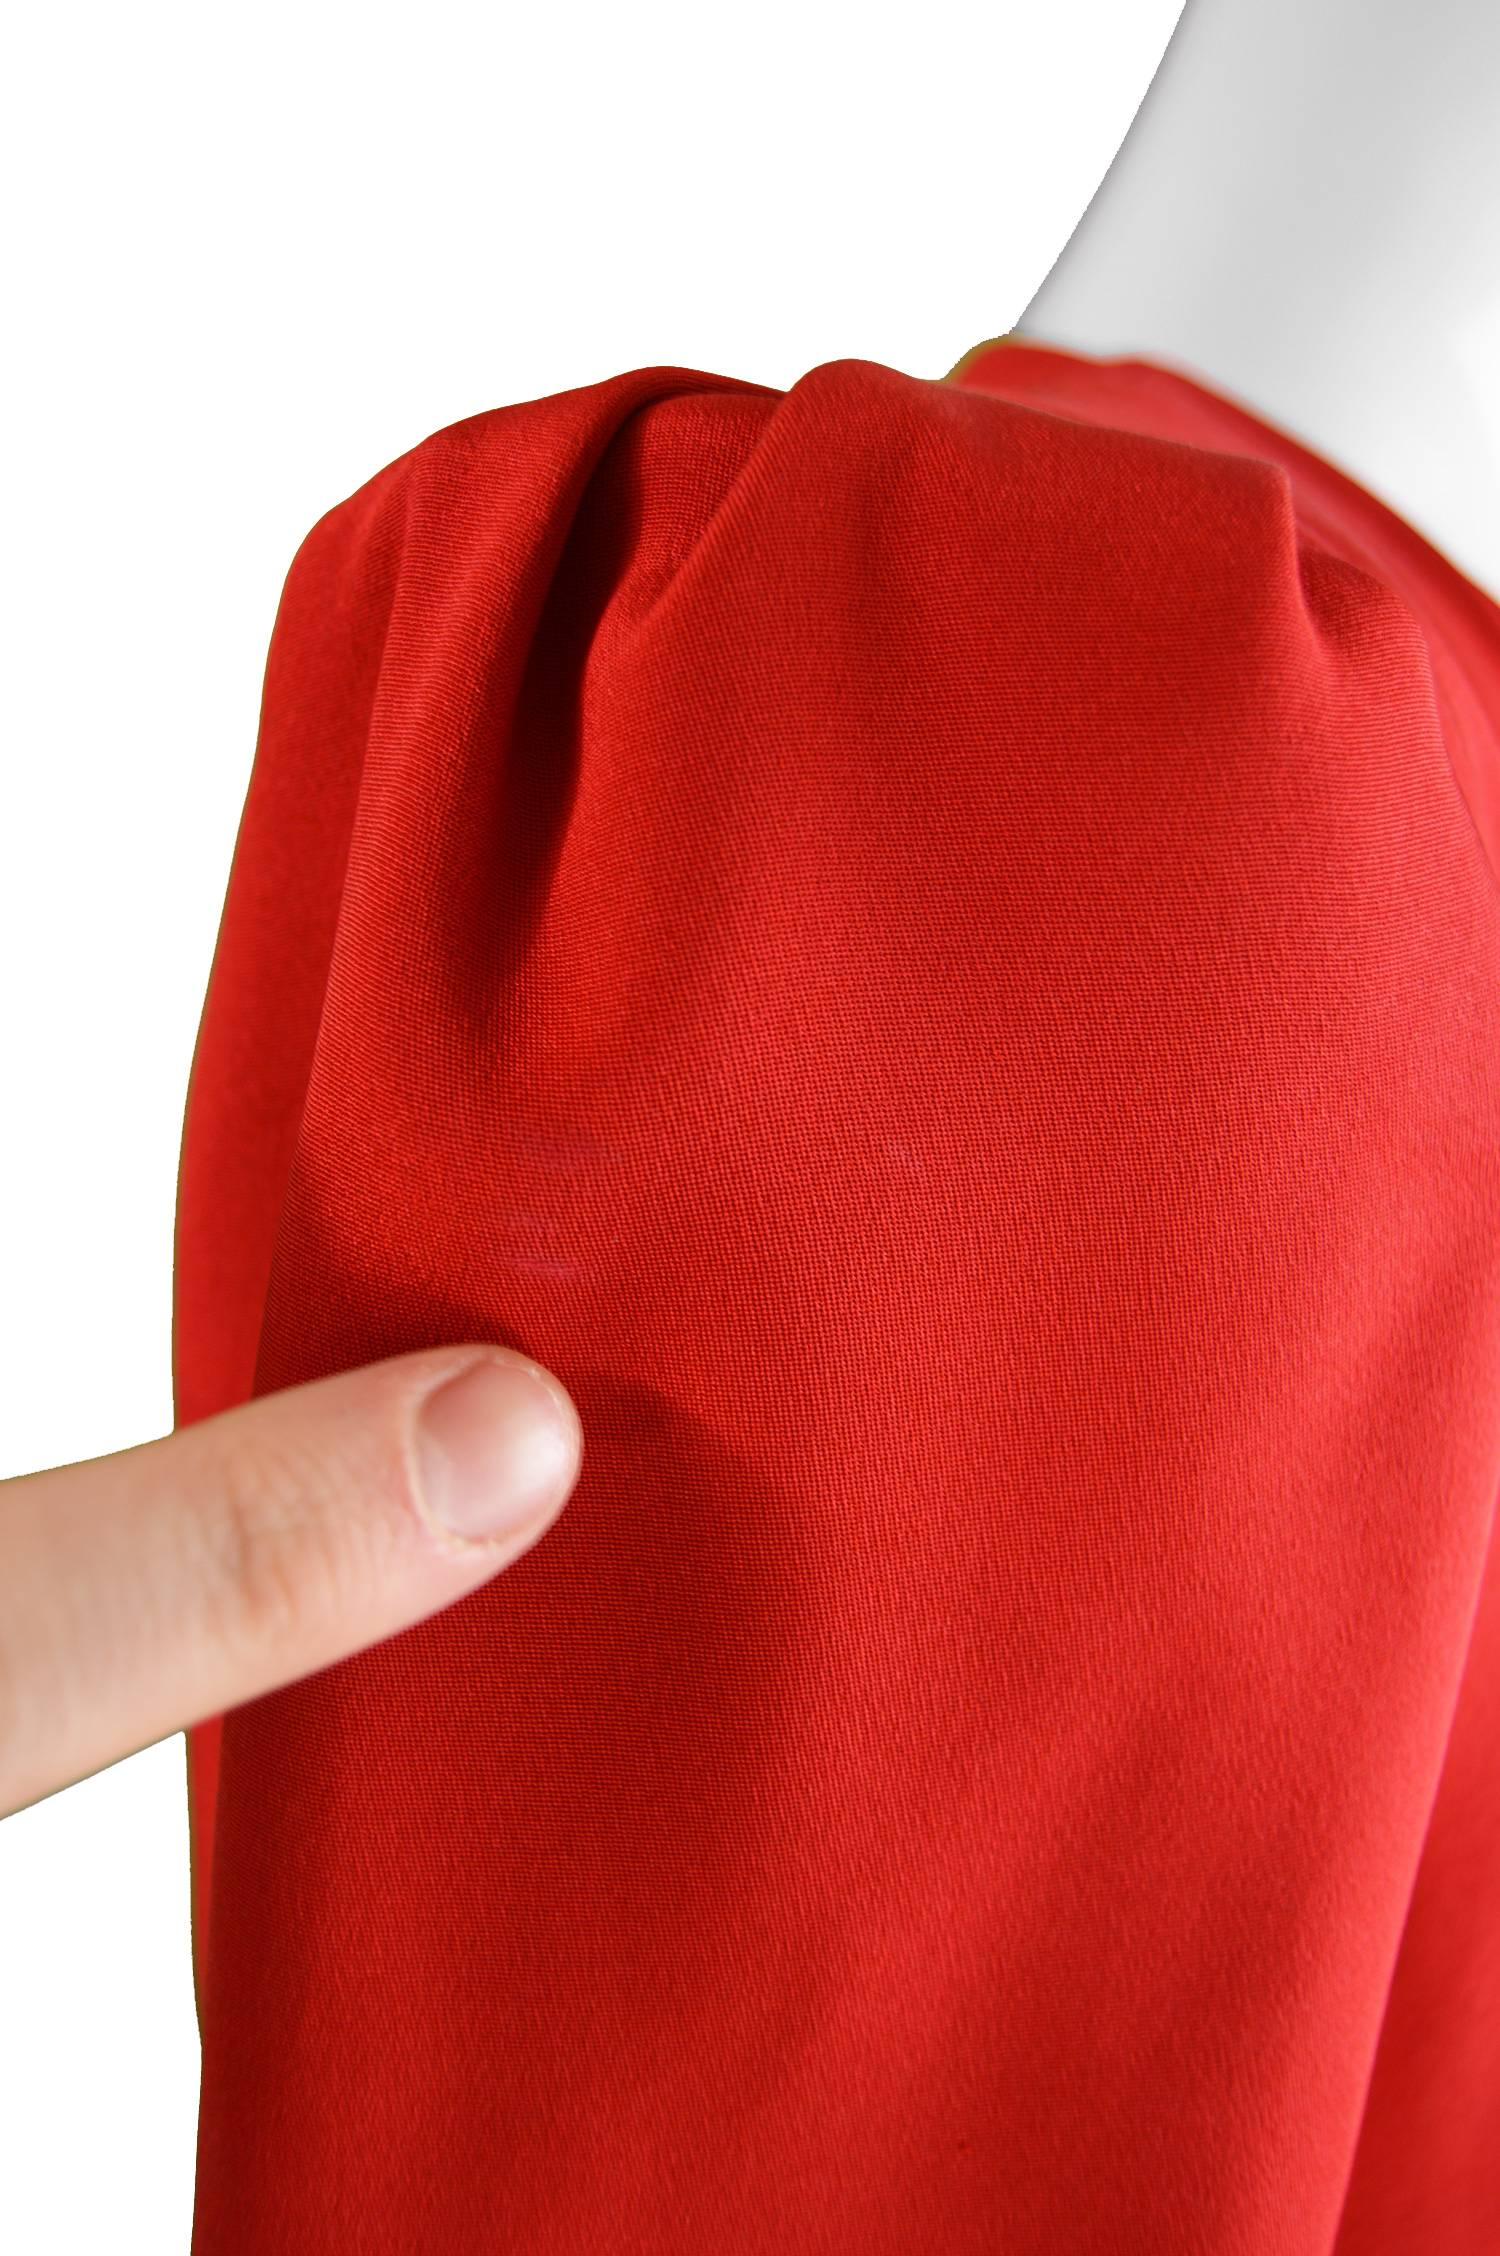 Carolina Herrera For Neiman Marcus Red Silk Full Skirt Evening Coat, 1980s 5